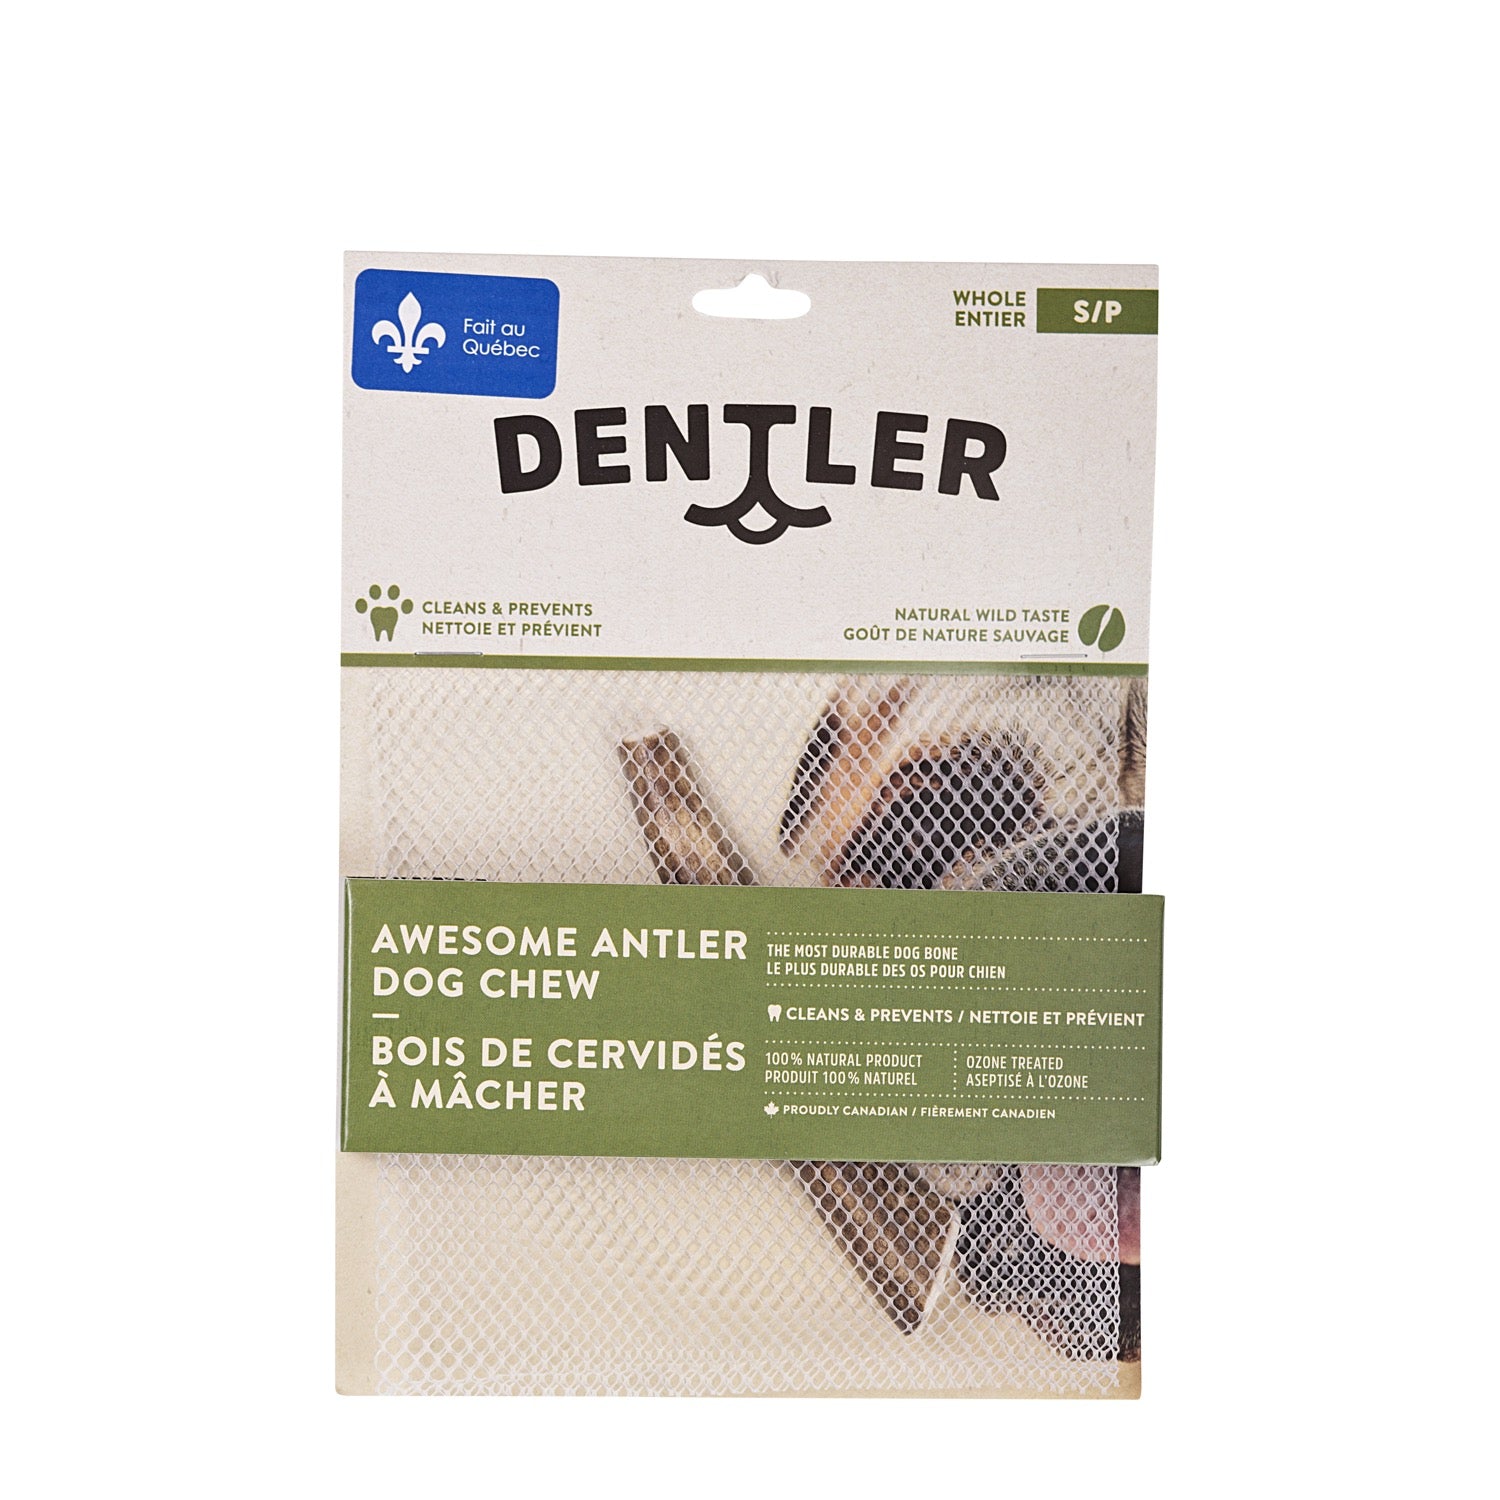 Dentler - Natural Wild Taste (Whole)